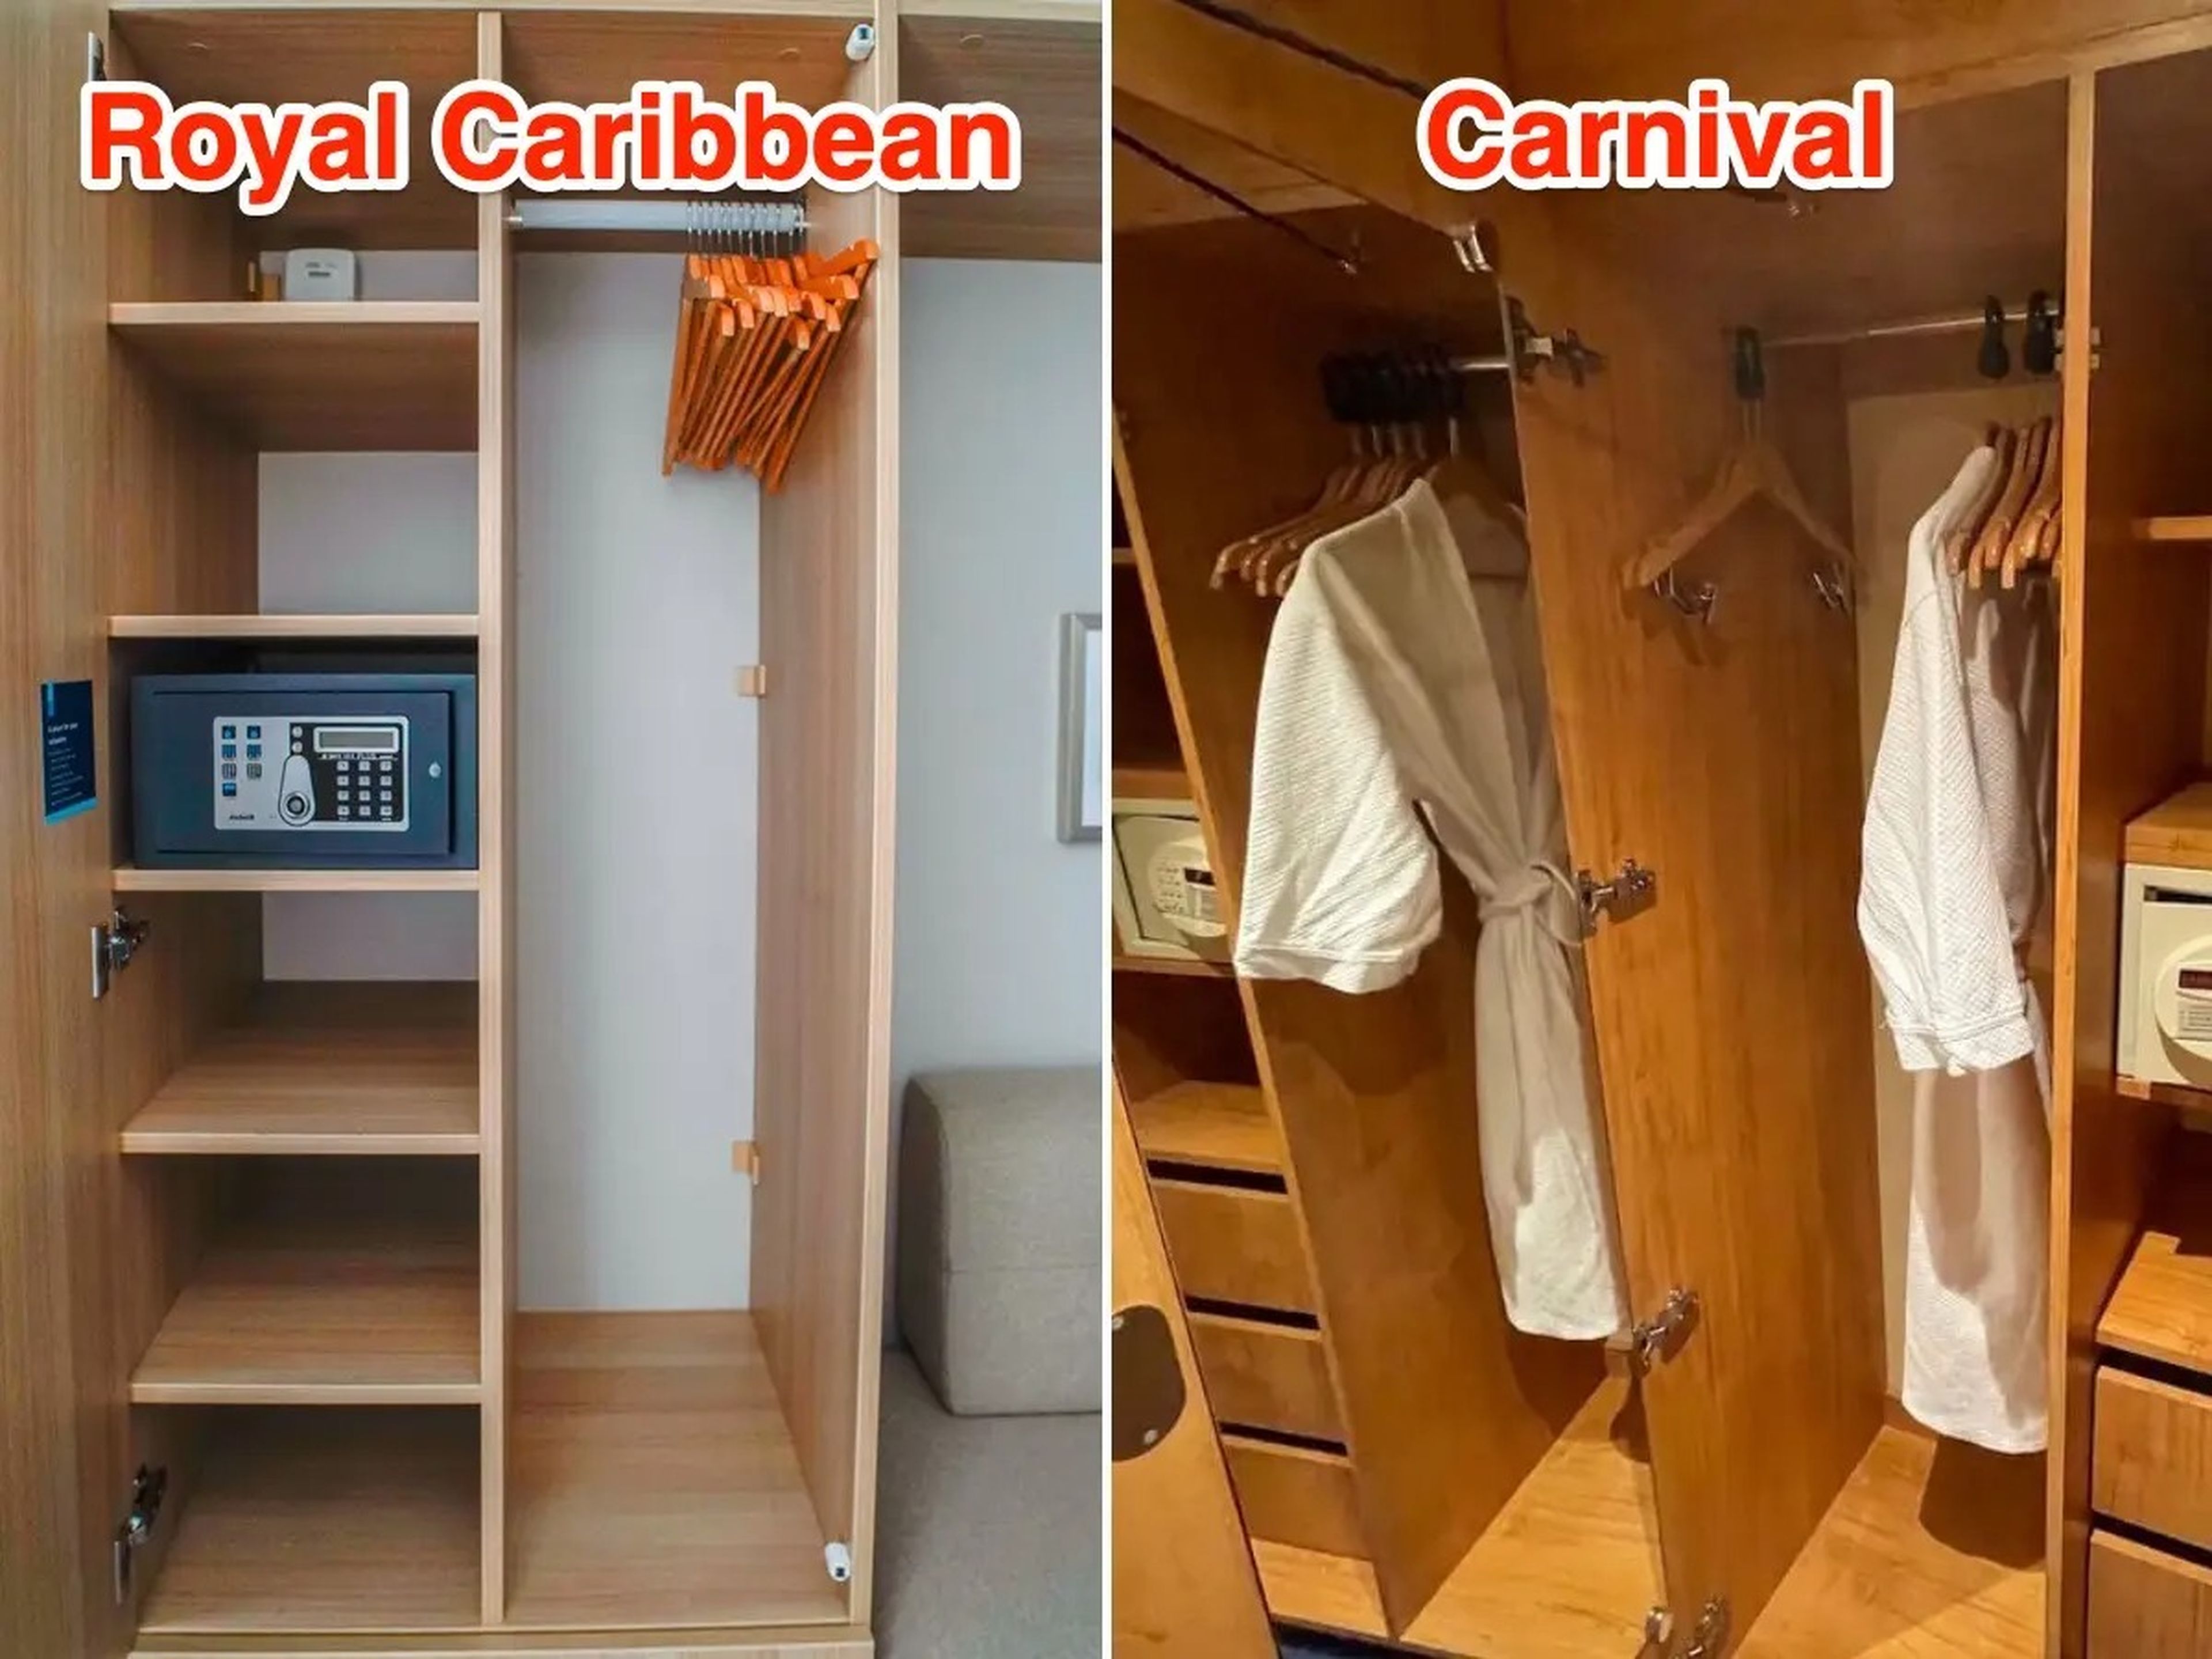 Interior de los armarios a bordo de los barcos Royal Caribbean (I) y Carnival (D).